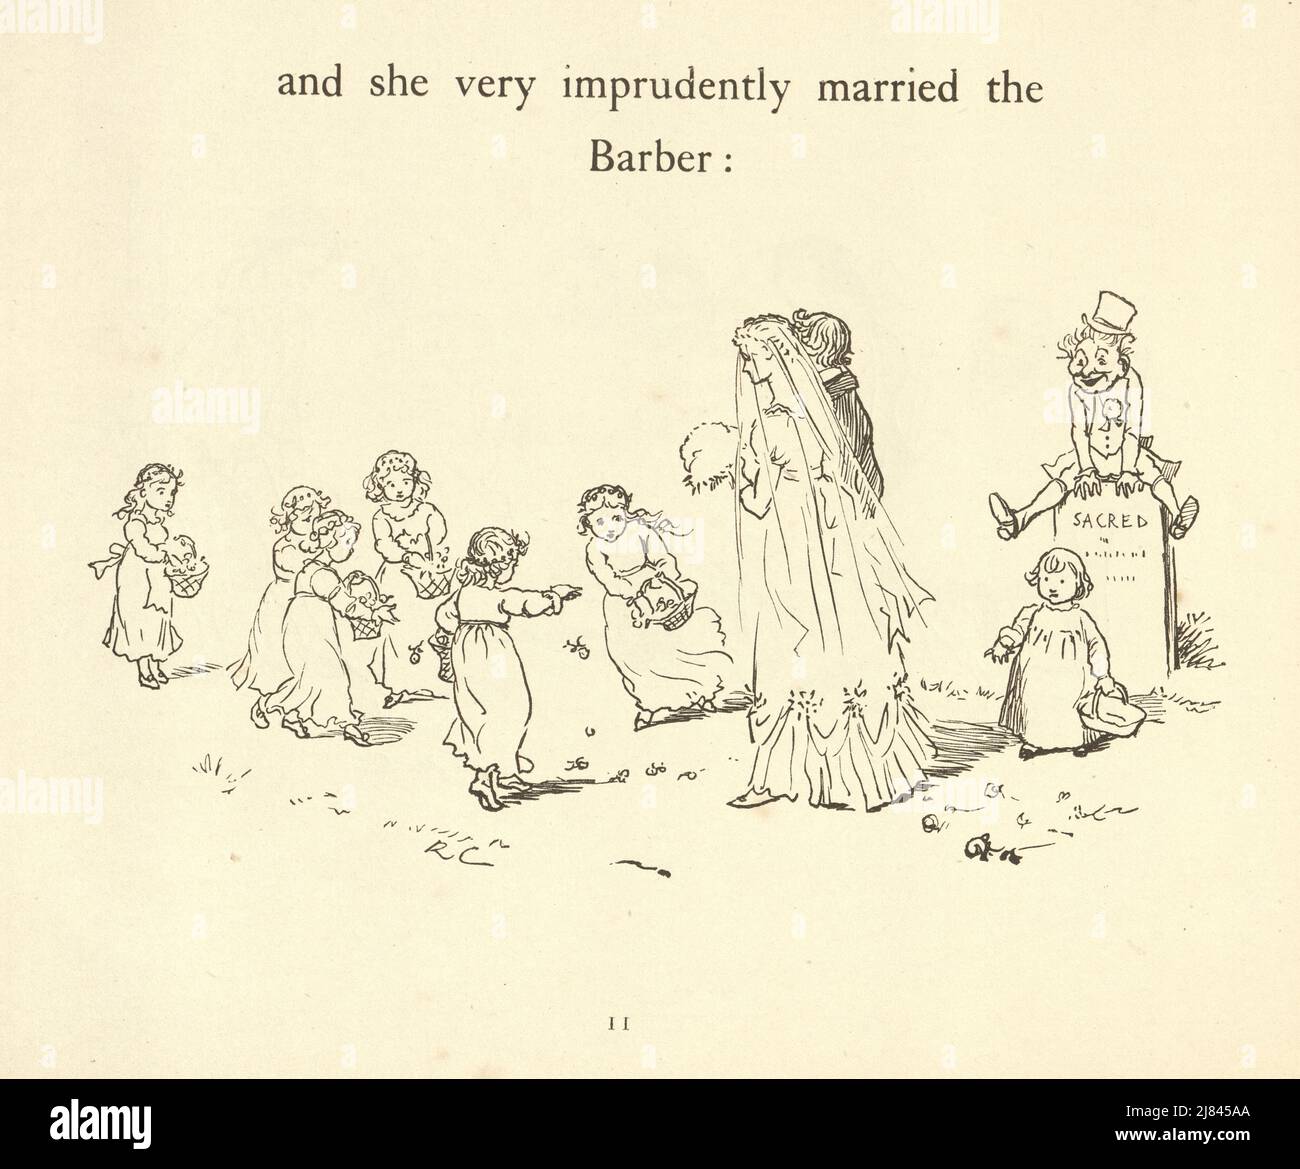 Vintage-Illustration der Szene aus dem Großen Panjandrum selbst, illustriert von Randolph Caldecott. Sie heiratete den Barber sehr unvorsichtig Stockfoto